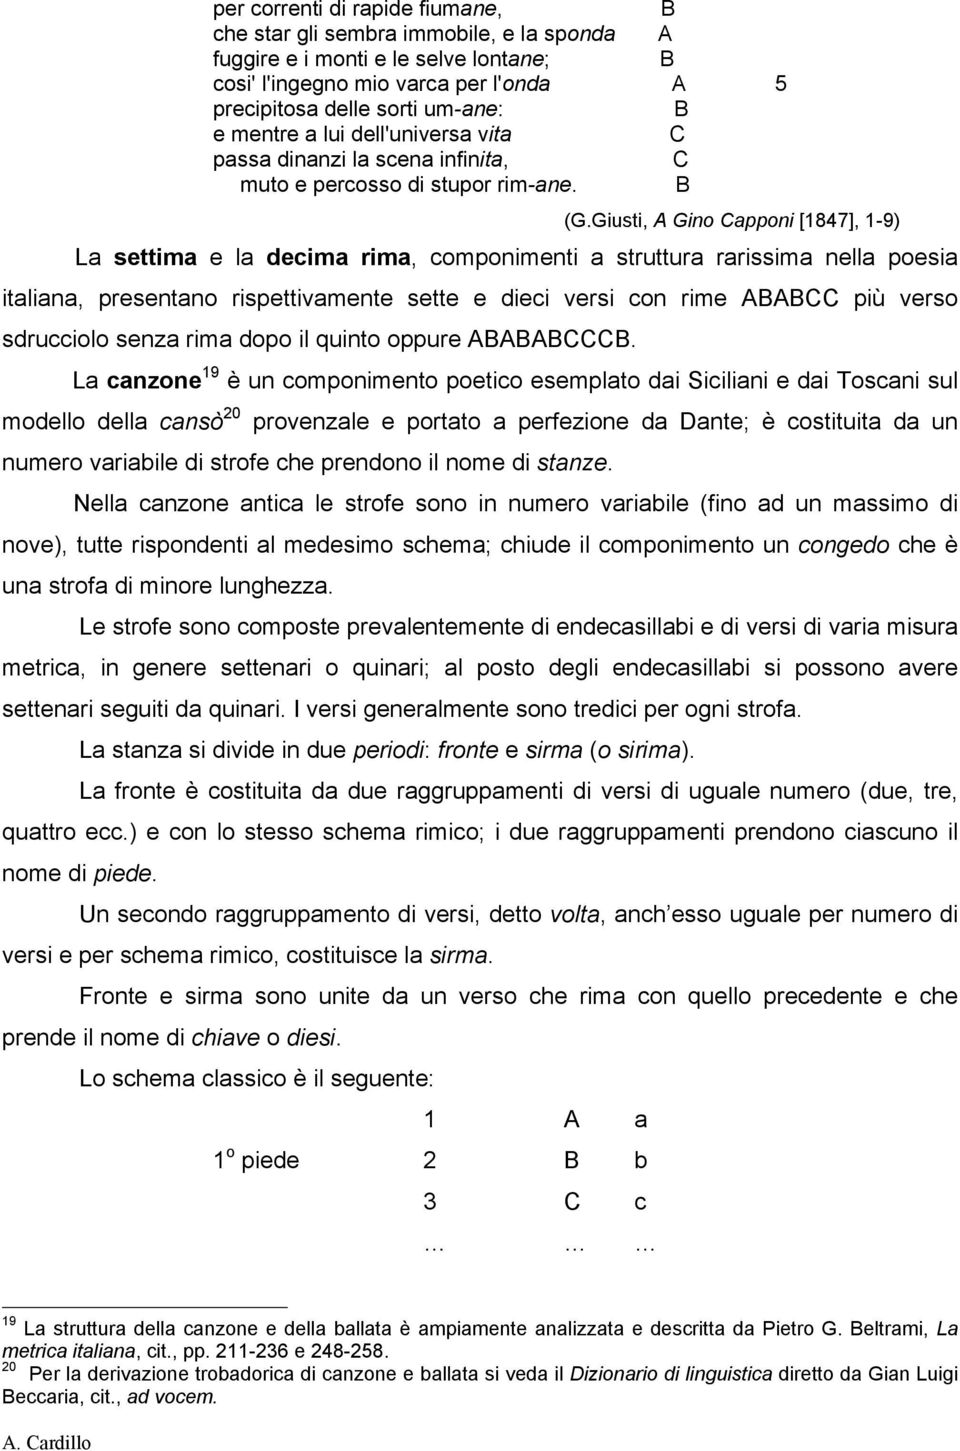 Giusti, Gino apponi [1847], 1-9) La settima e la decima rima, componimenti a struttura rarissima nella poesia italiana, presentano rispettivamente sette e dieci versi con rime più verso sdrucciolo